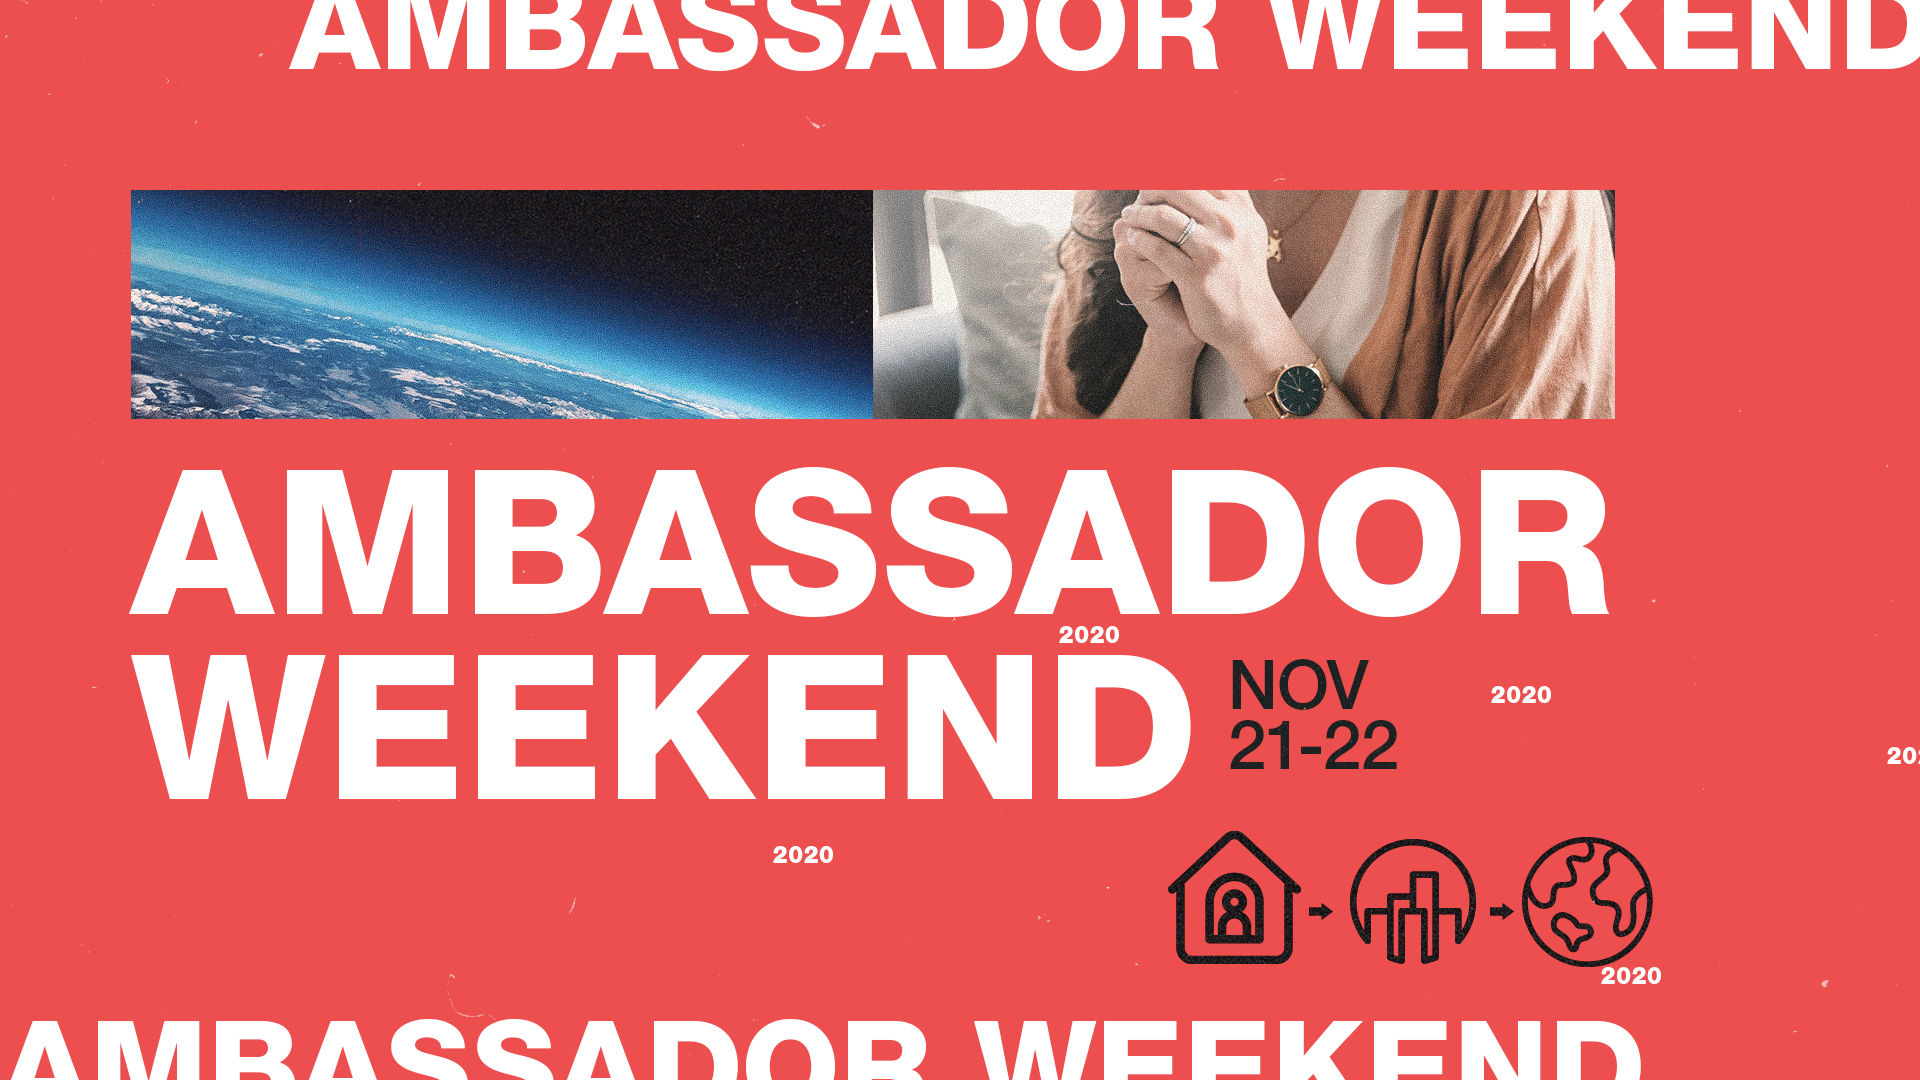 Ambassador weekend image